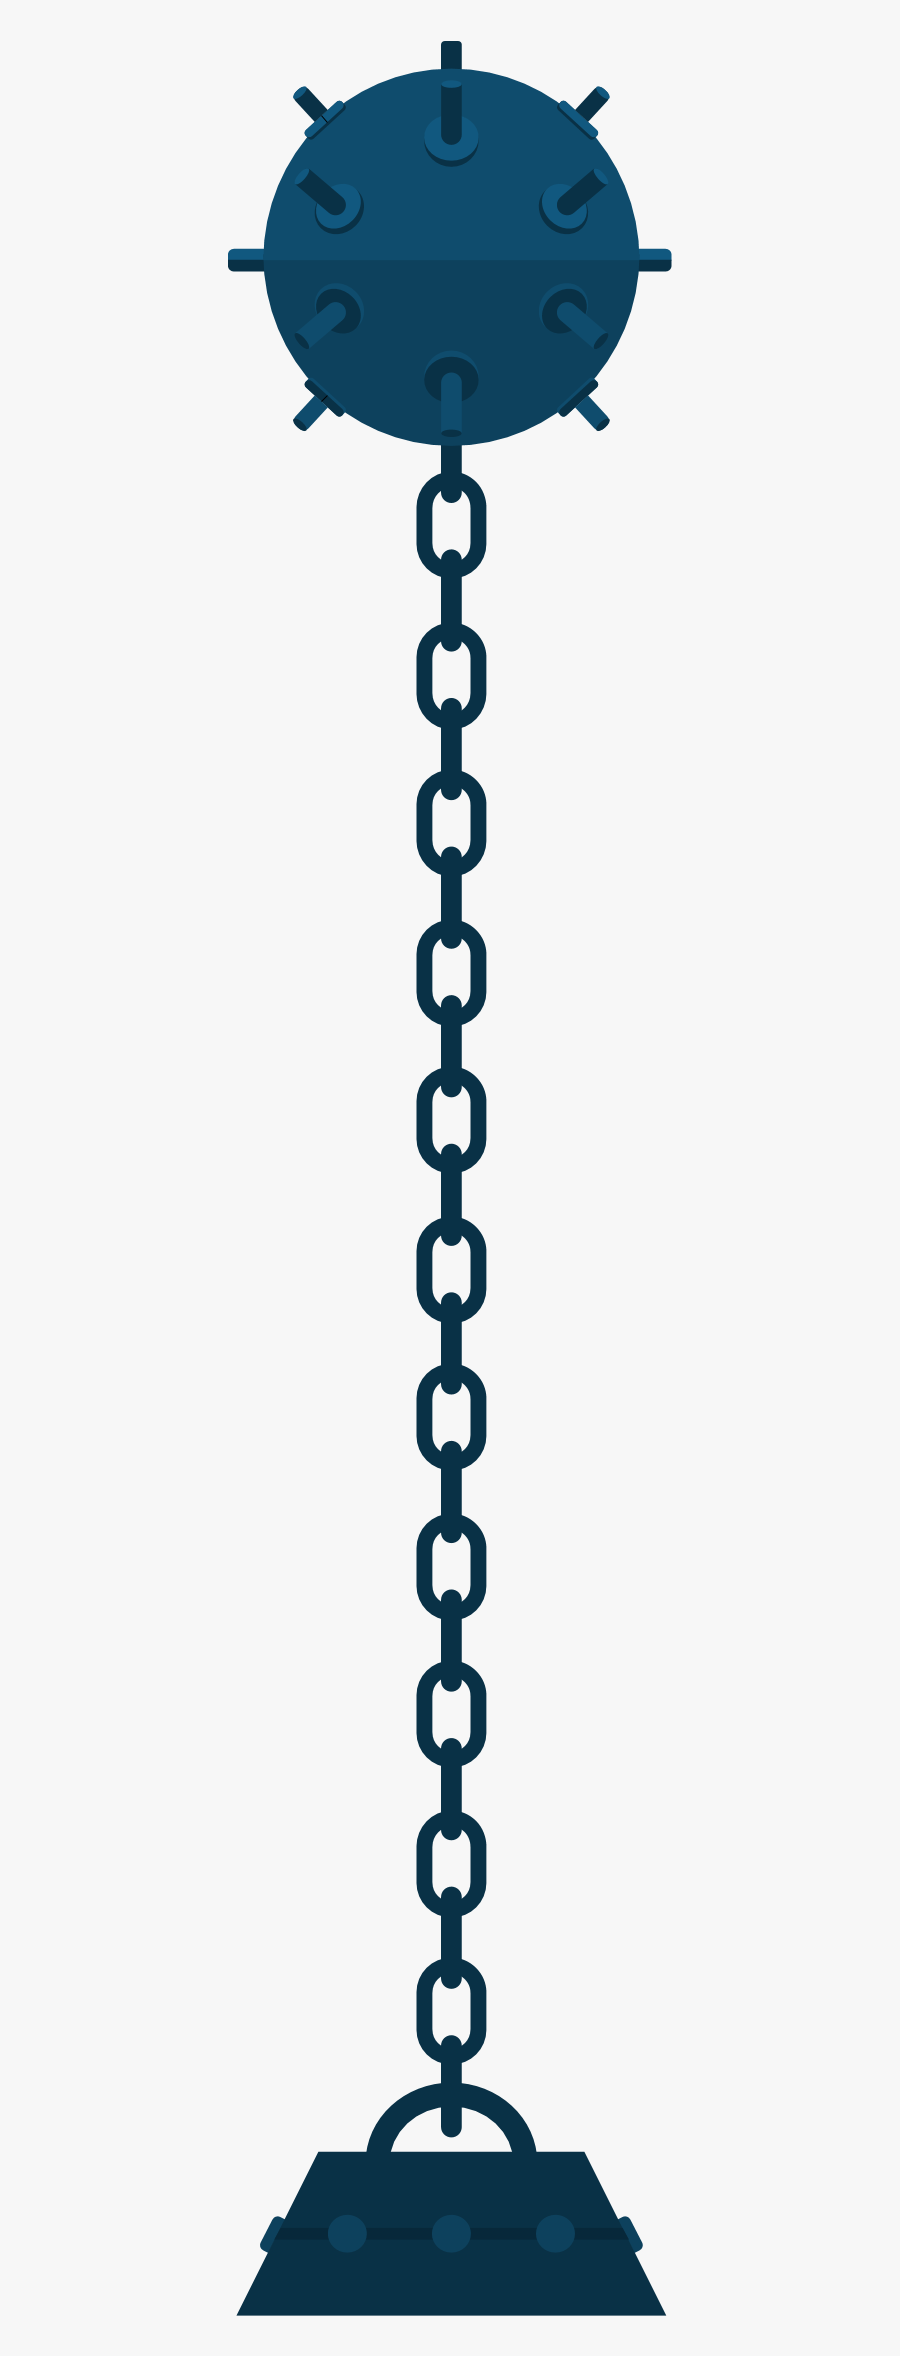 Chain, Transparent Clipart